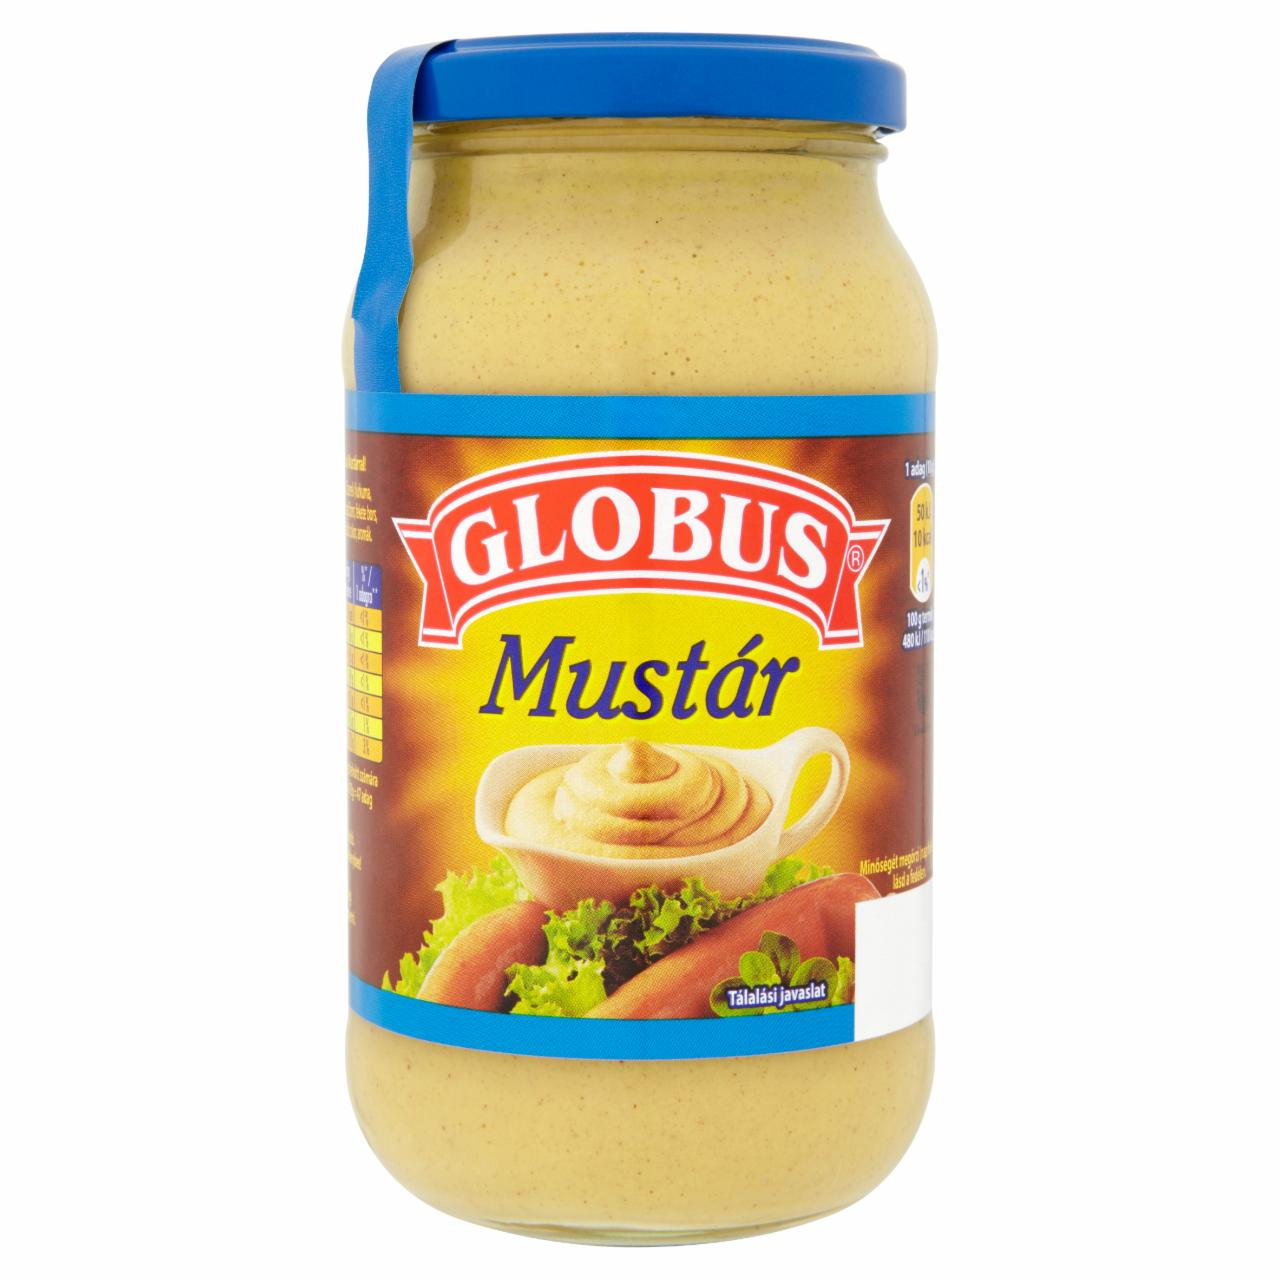 Képek - Globus mustár 470 g